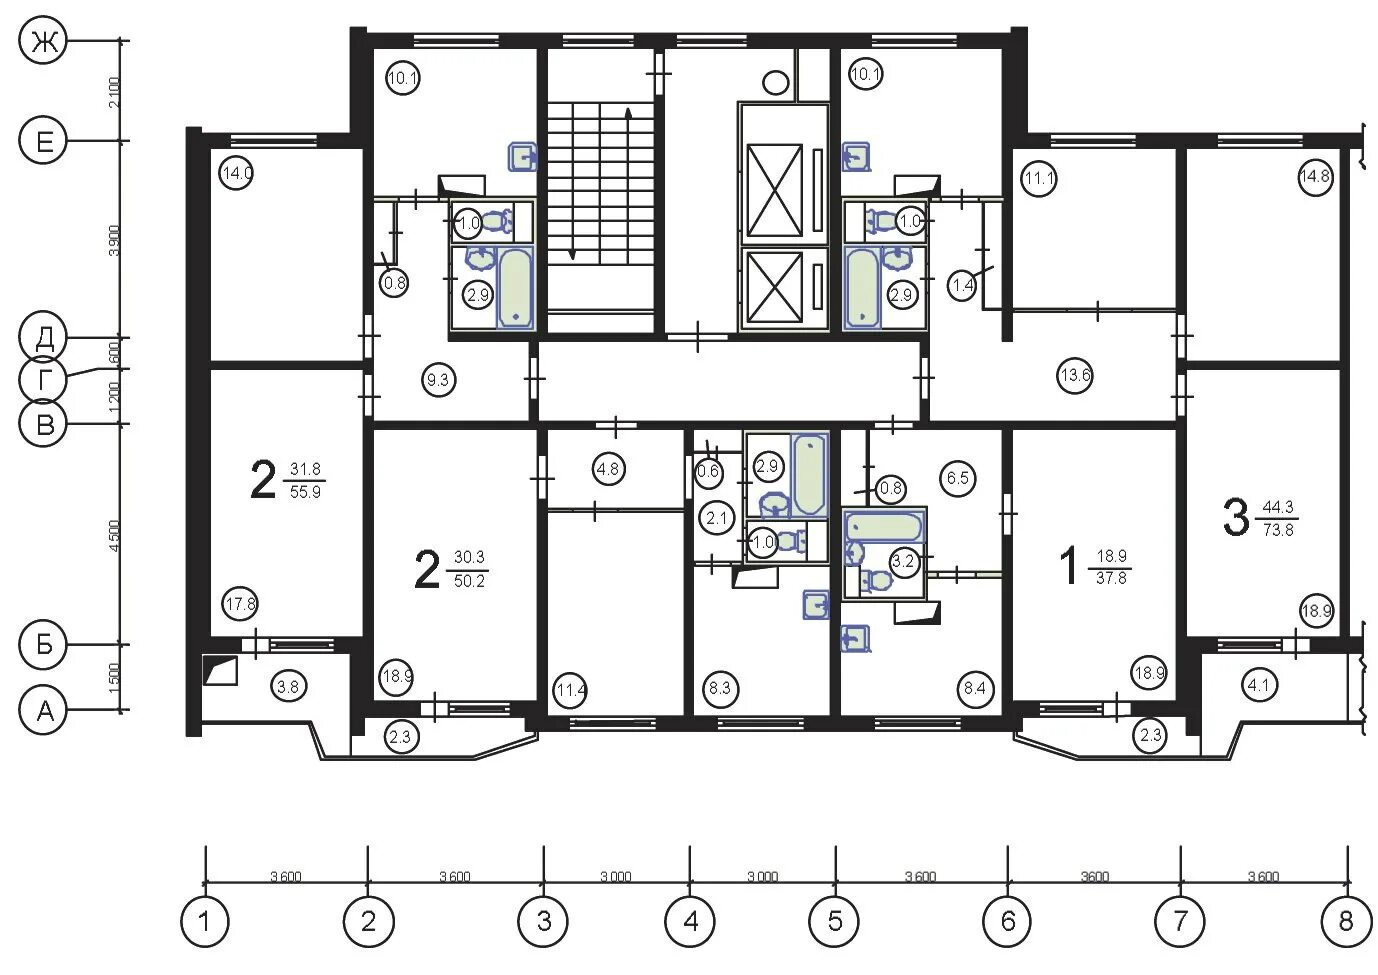 Планировка панельных квартир. Планировка квартир п-44. Планировка п-44 двухкомнатная. П-44 планировка с размерами 2-х комнатная квартира.